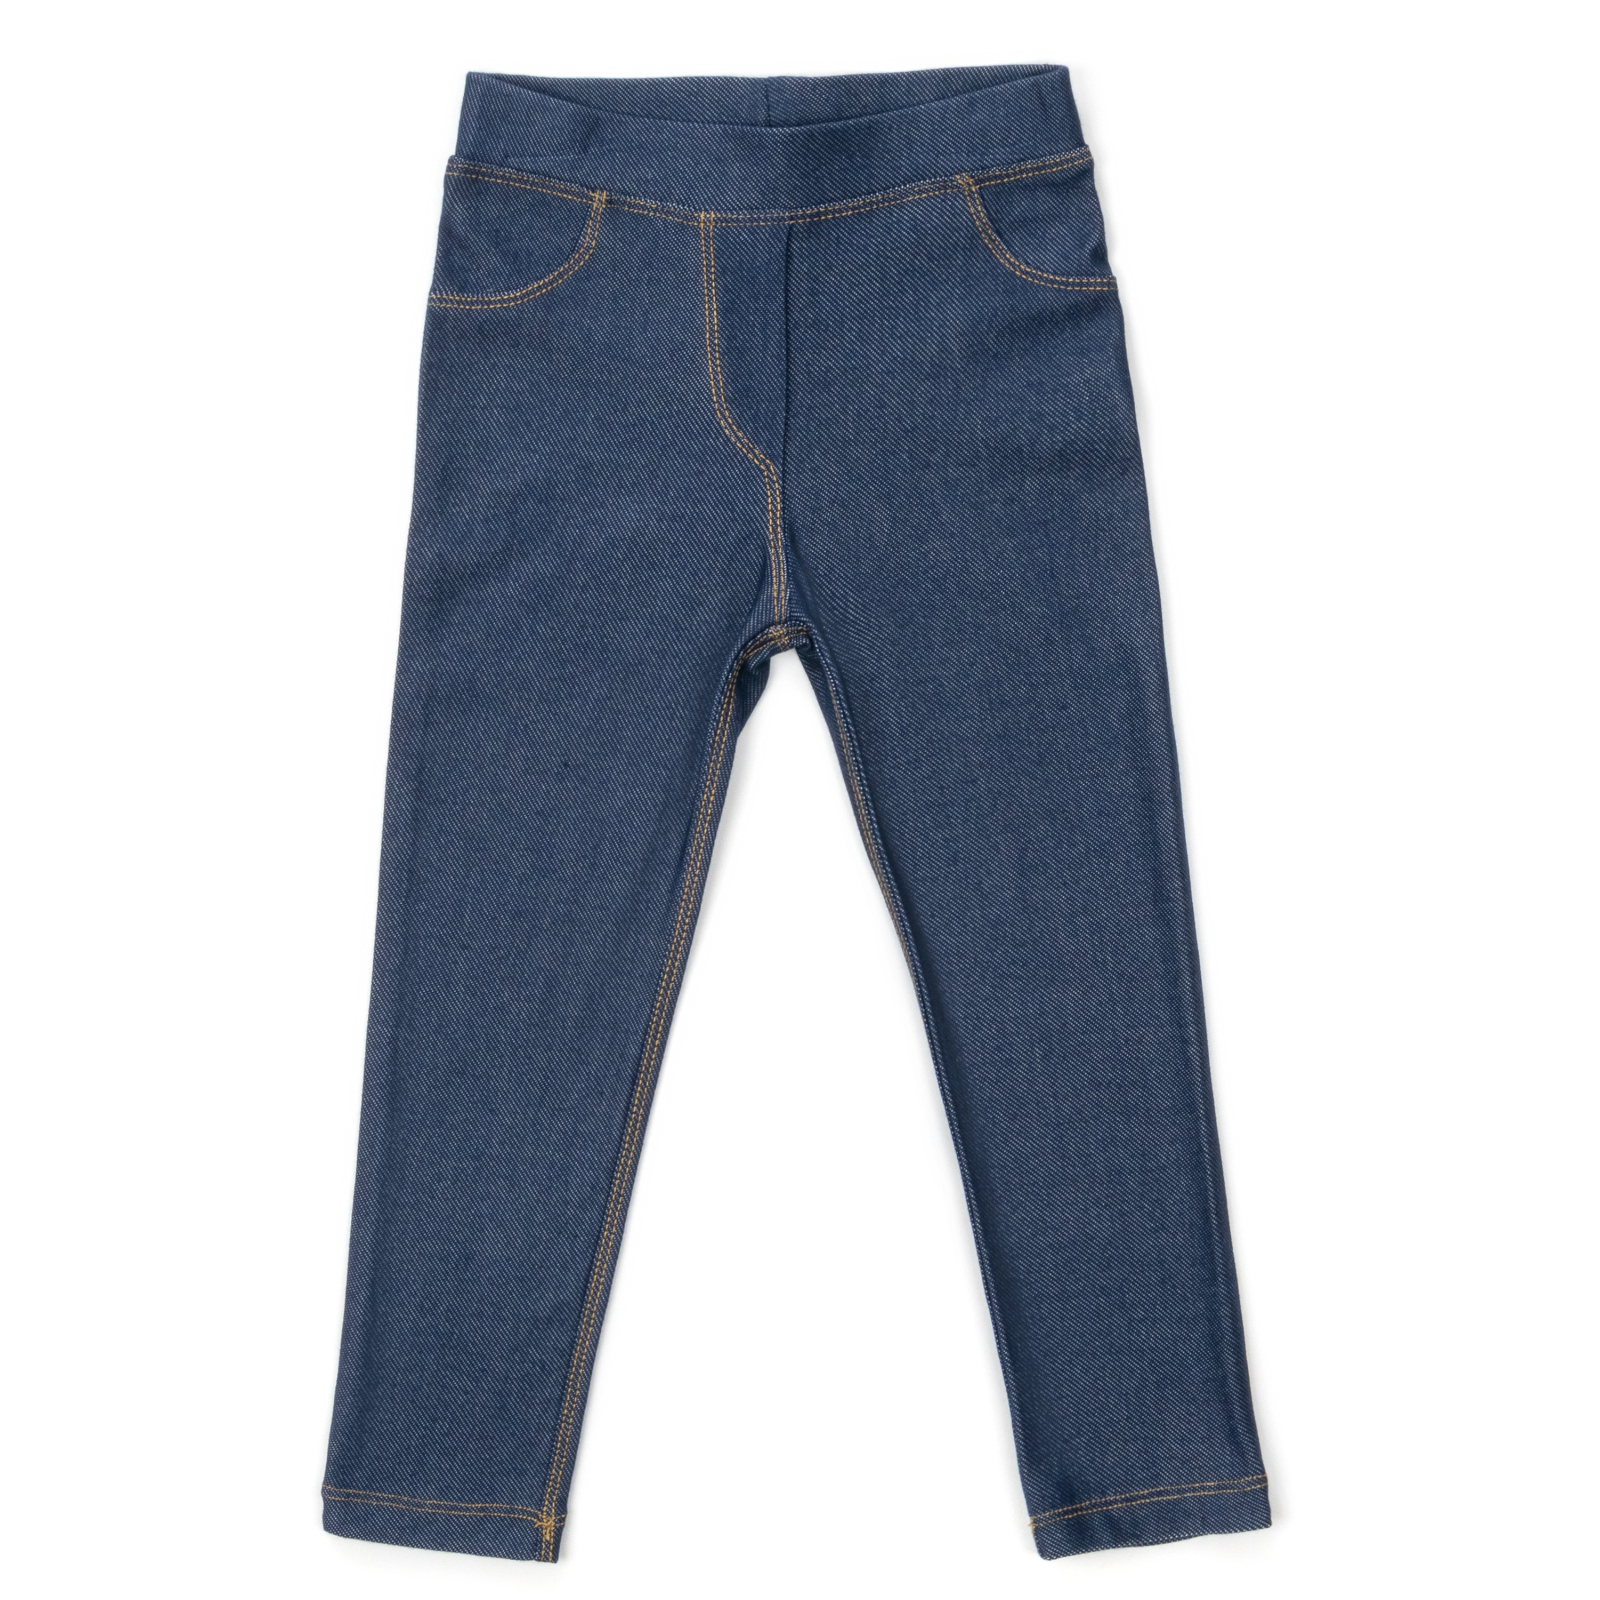 Лосини Breeze трикотажні (4416-134G-jeans)